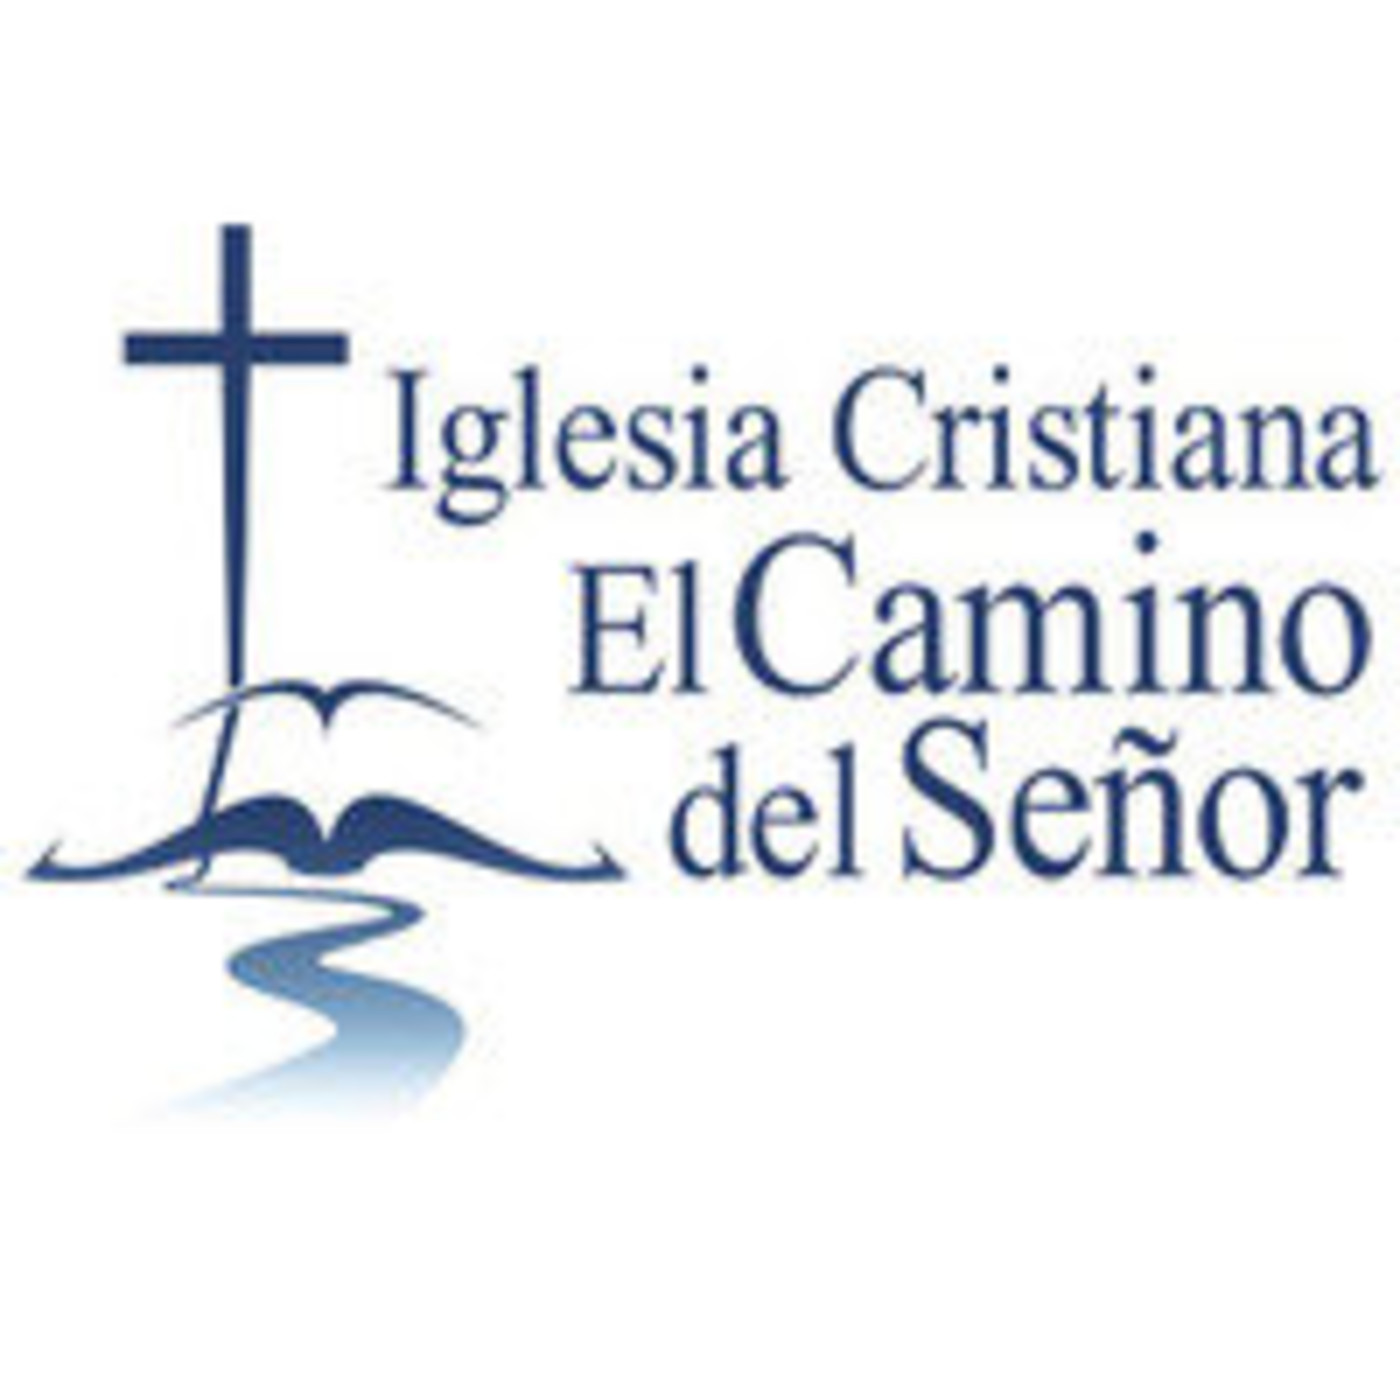 Podcast Iglesia Cristiana El Camino del Señor - Podcast en iVoox